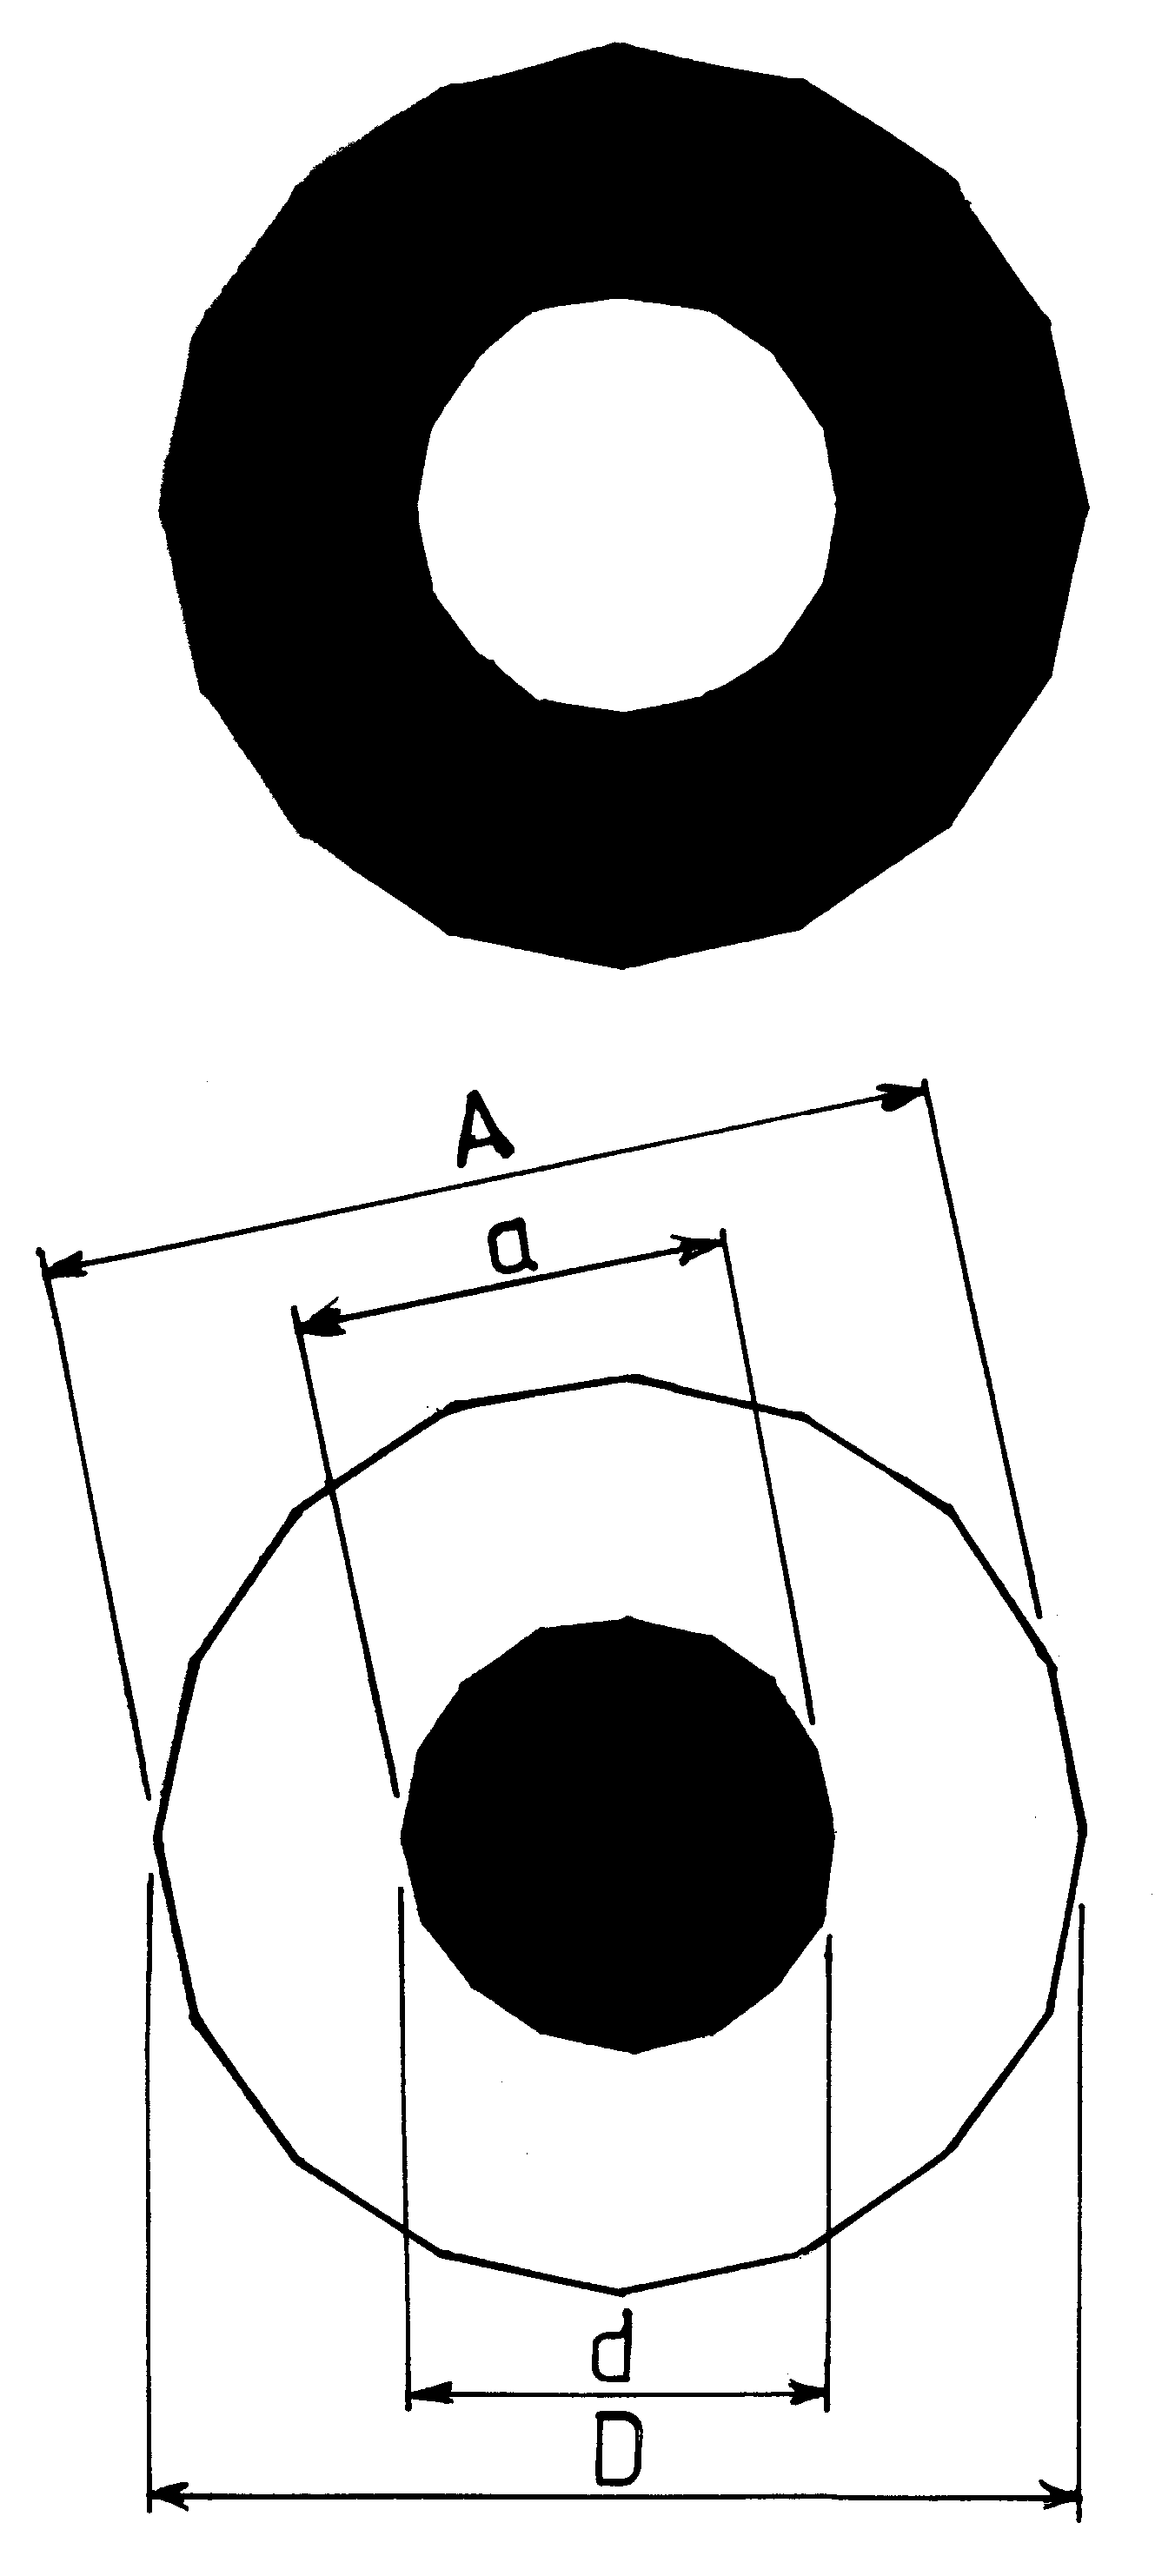 Fig./Rys. C8(3io) in/w [1/4]